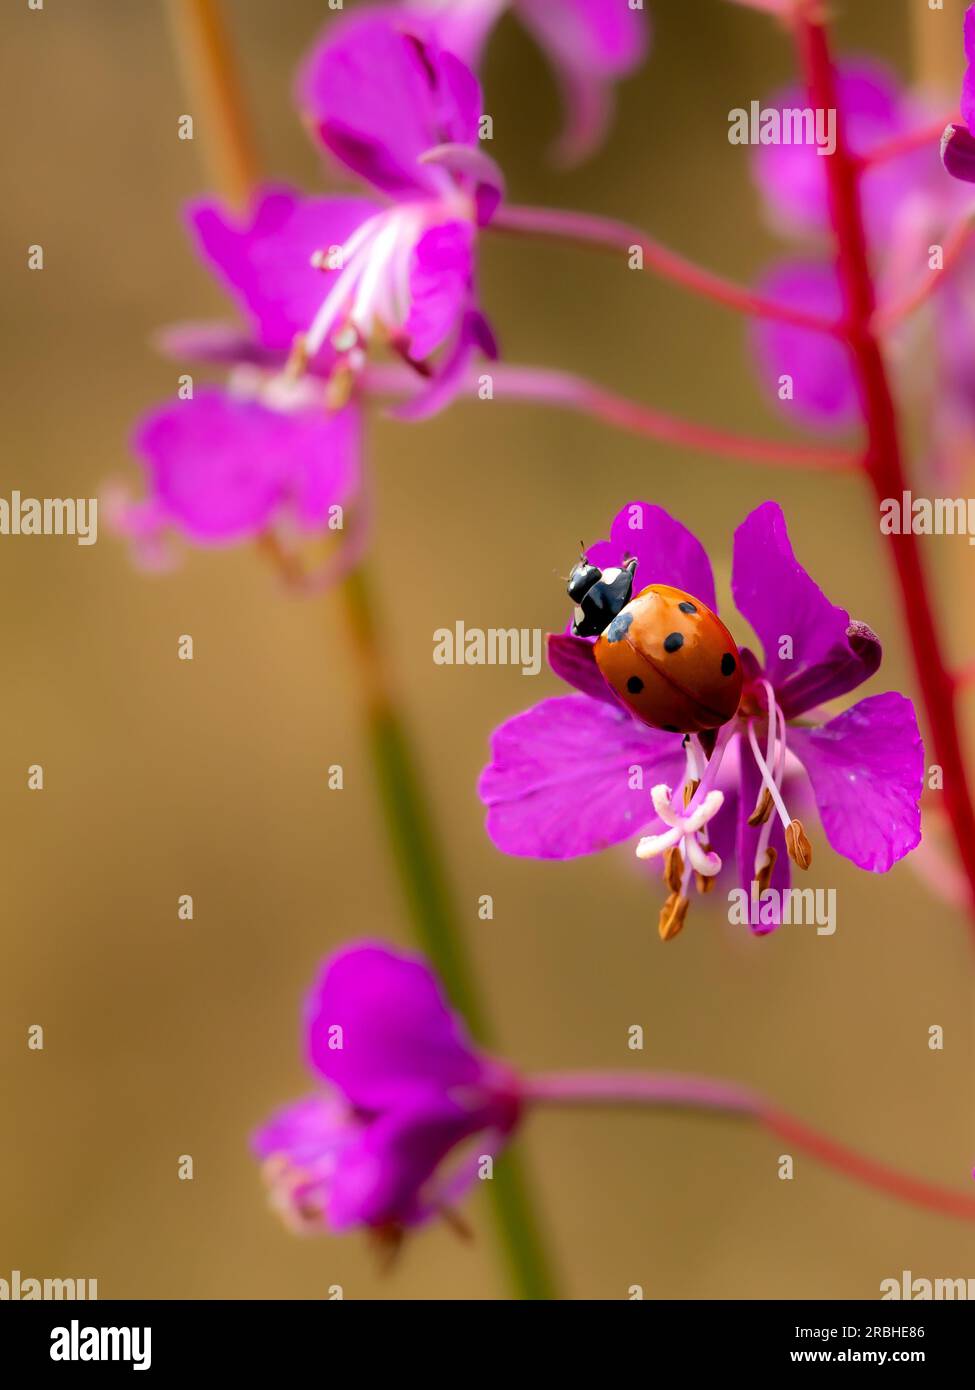 Ladybug on Herbs Stock Photo